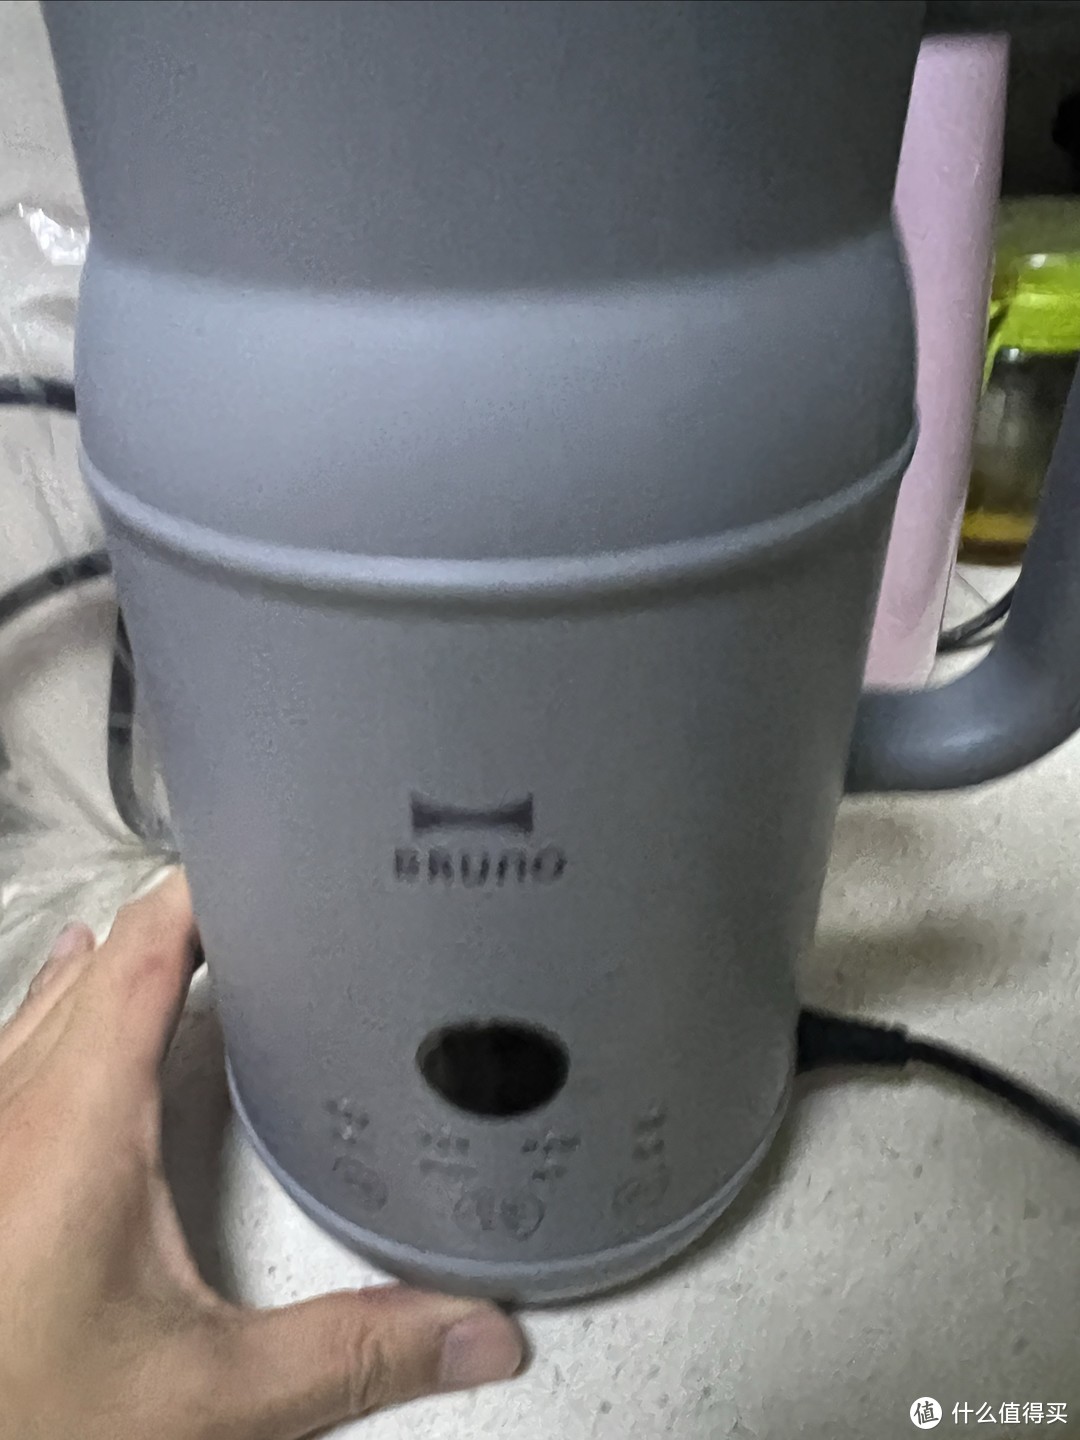 虽然青铜换得，但是却是我的 王者：BRUNO小奶壶豆浆机0.6L